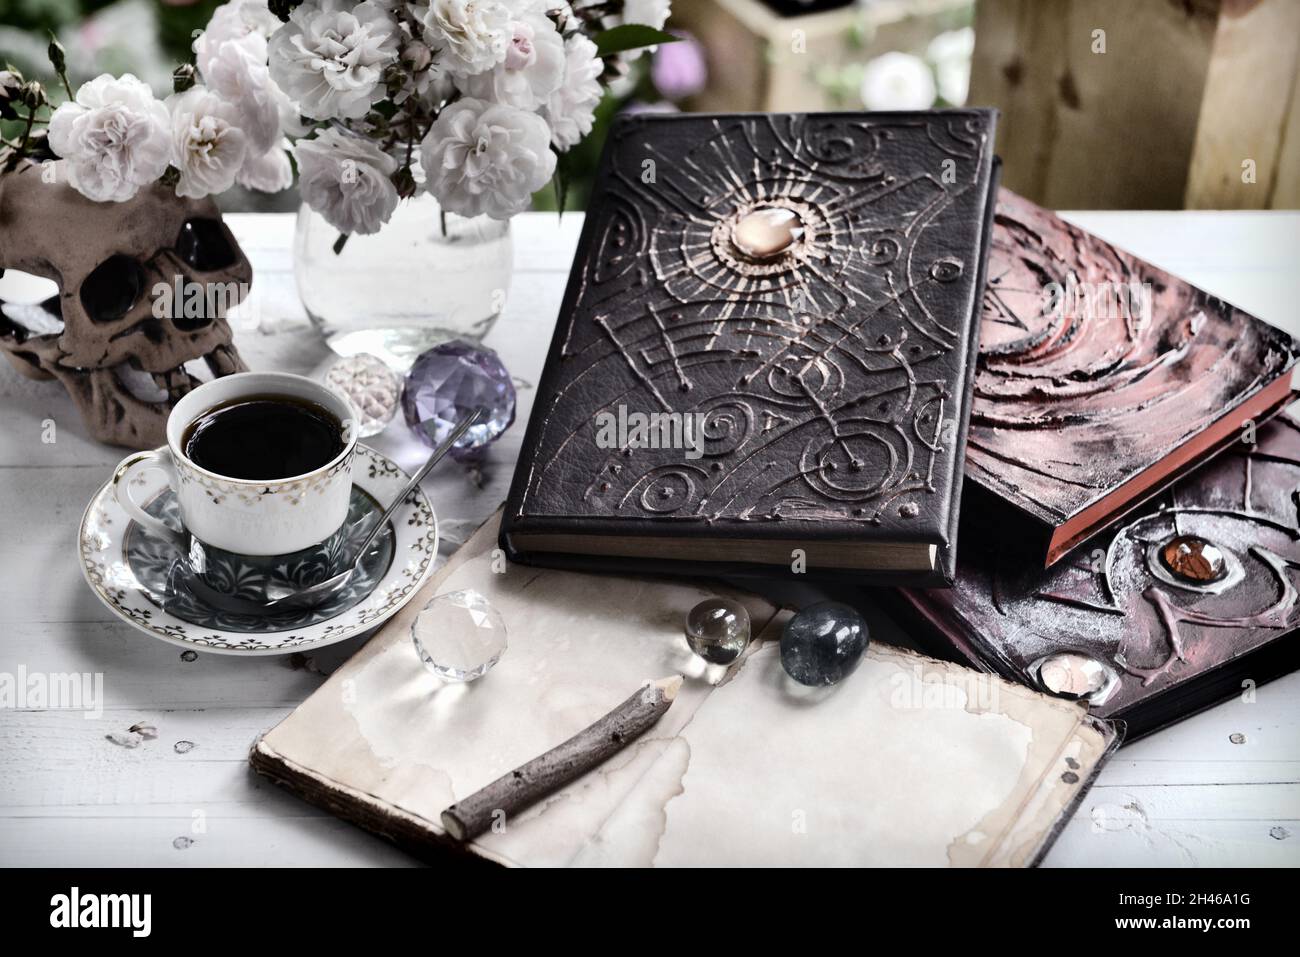 Vintage grunge encore la vie avec vieux livre de sorcière, journal, tasse et crâne sur table vide.Concept ésotérique, occulte et mystique de sorcellerie Banque D'Images